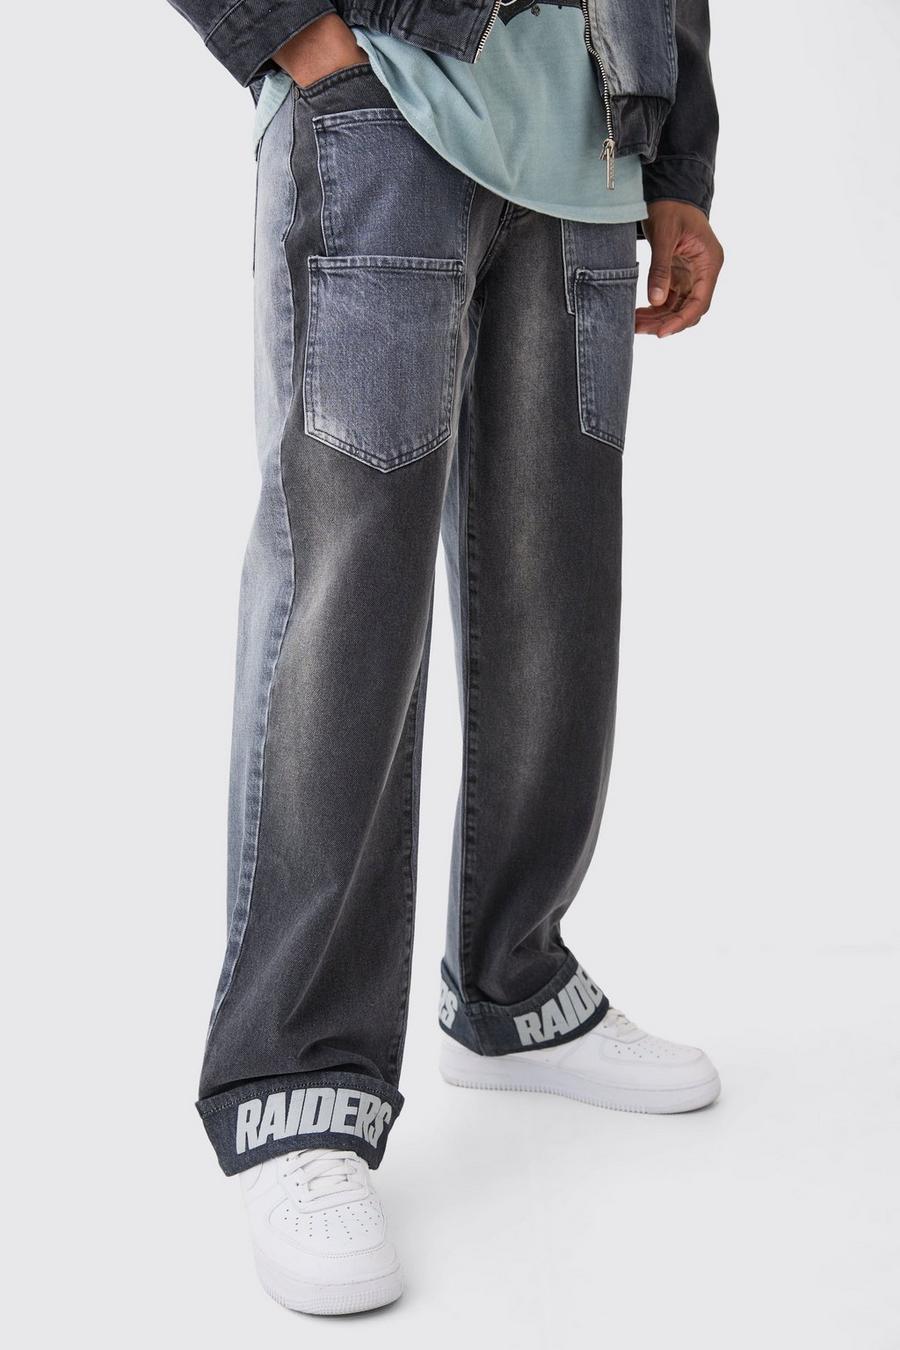 Jean baggy bicolore à poches multiples et imprimé NFL Raiders, Charcoal